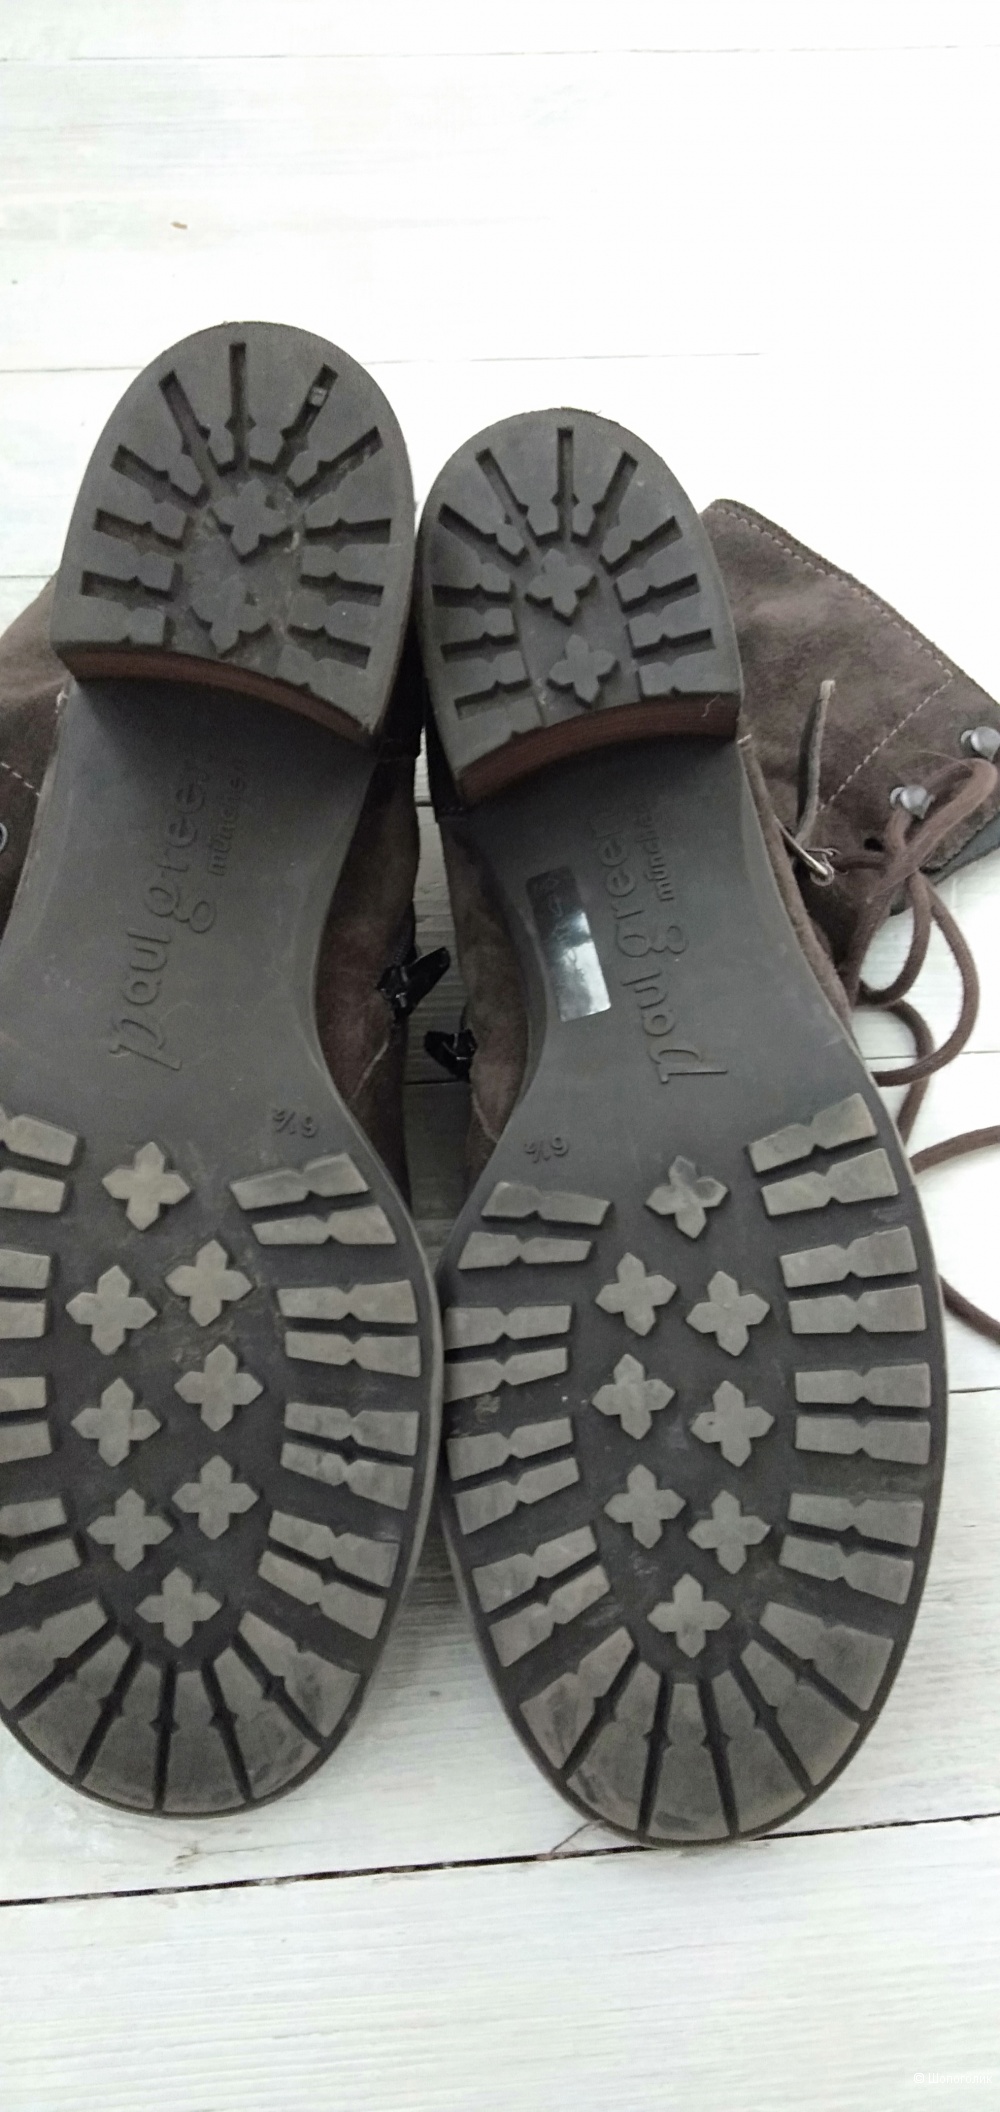 Ботинки Paul Green ,размер 6,5